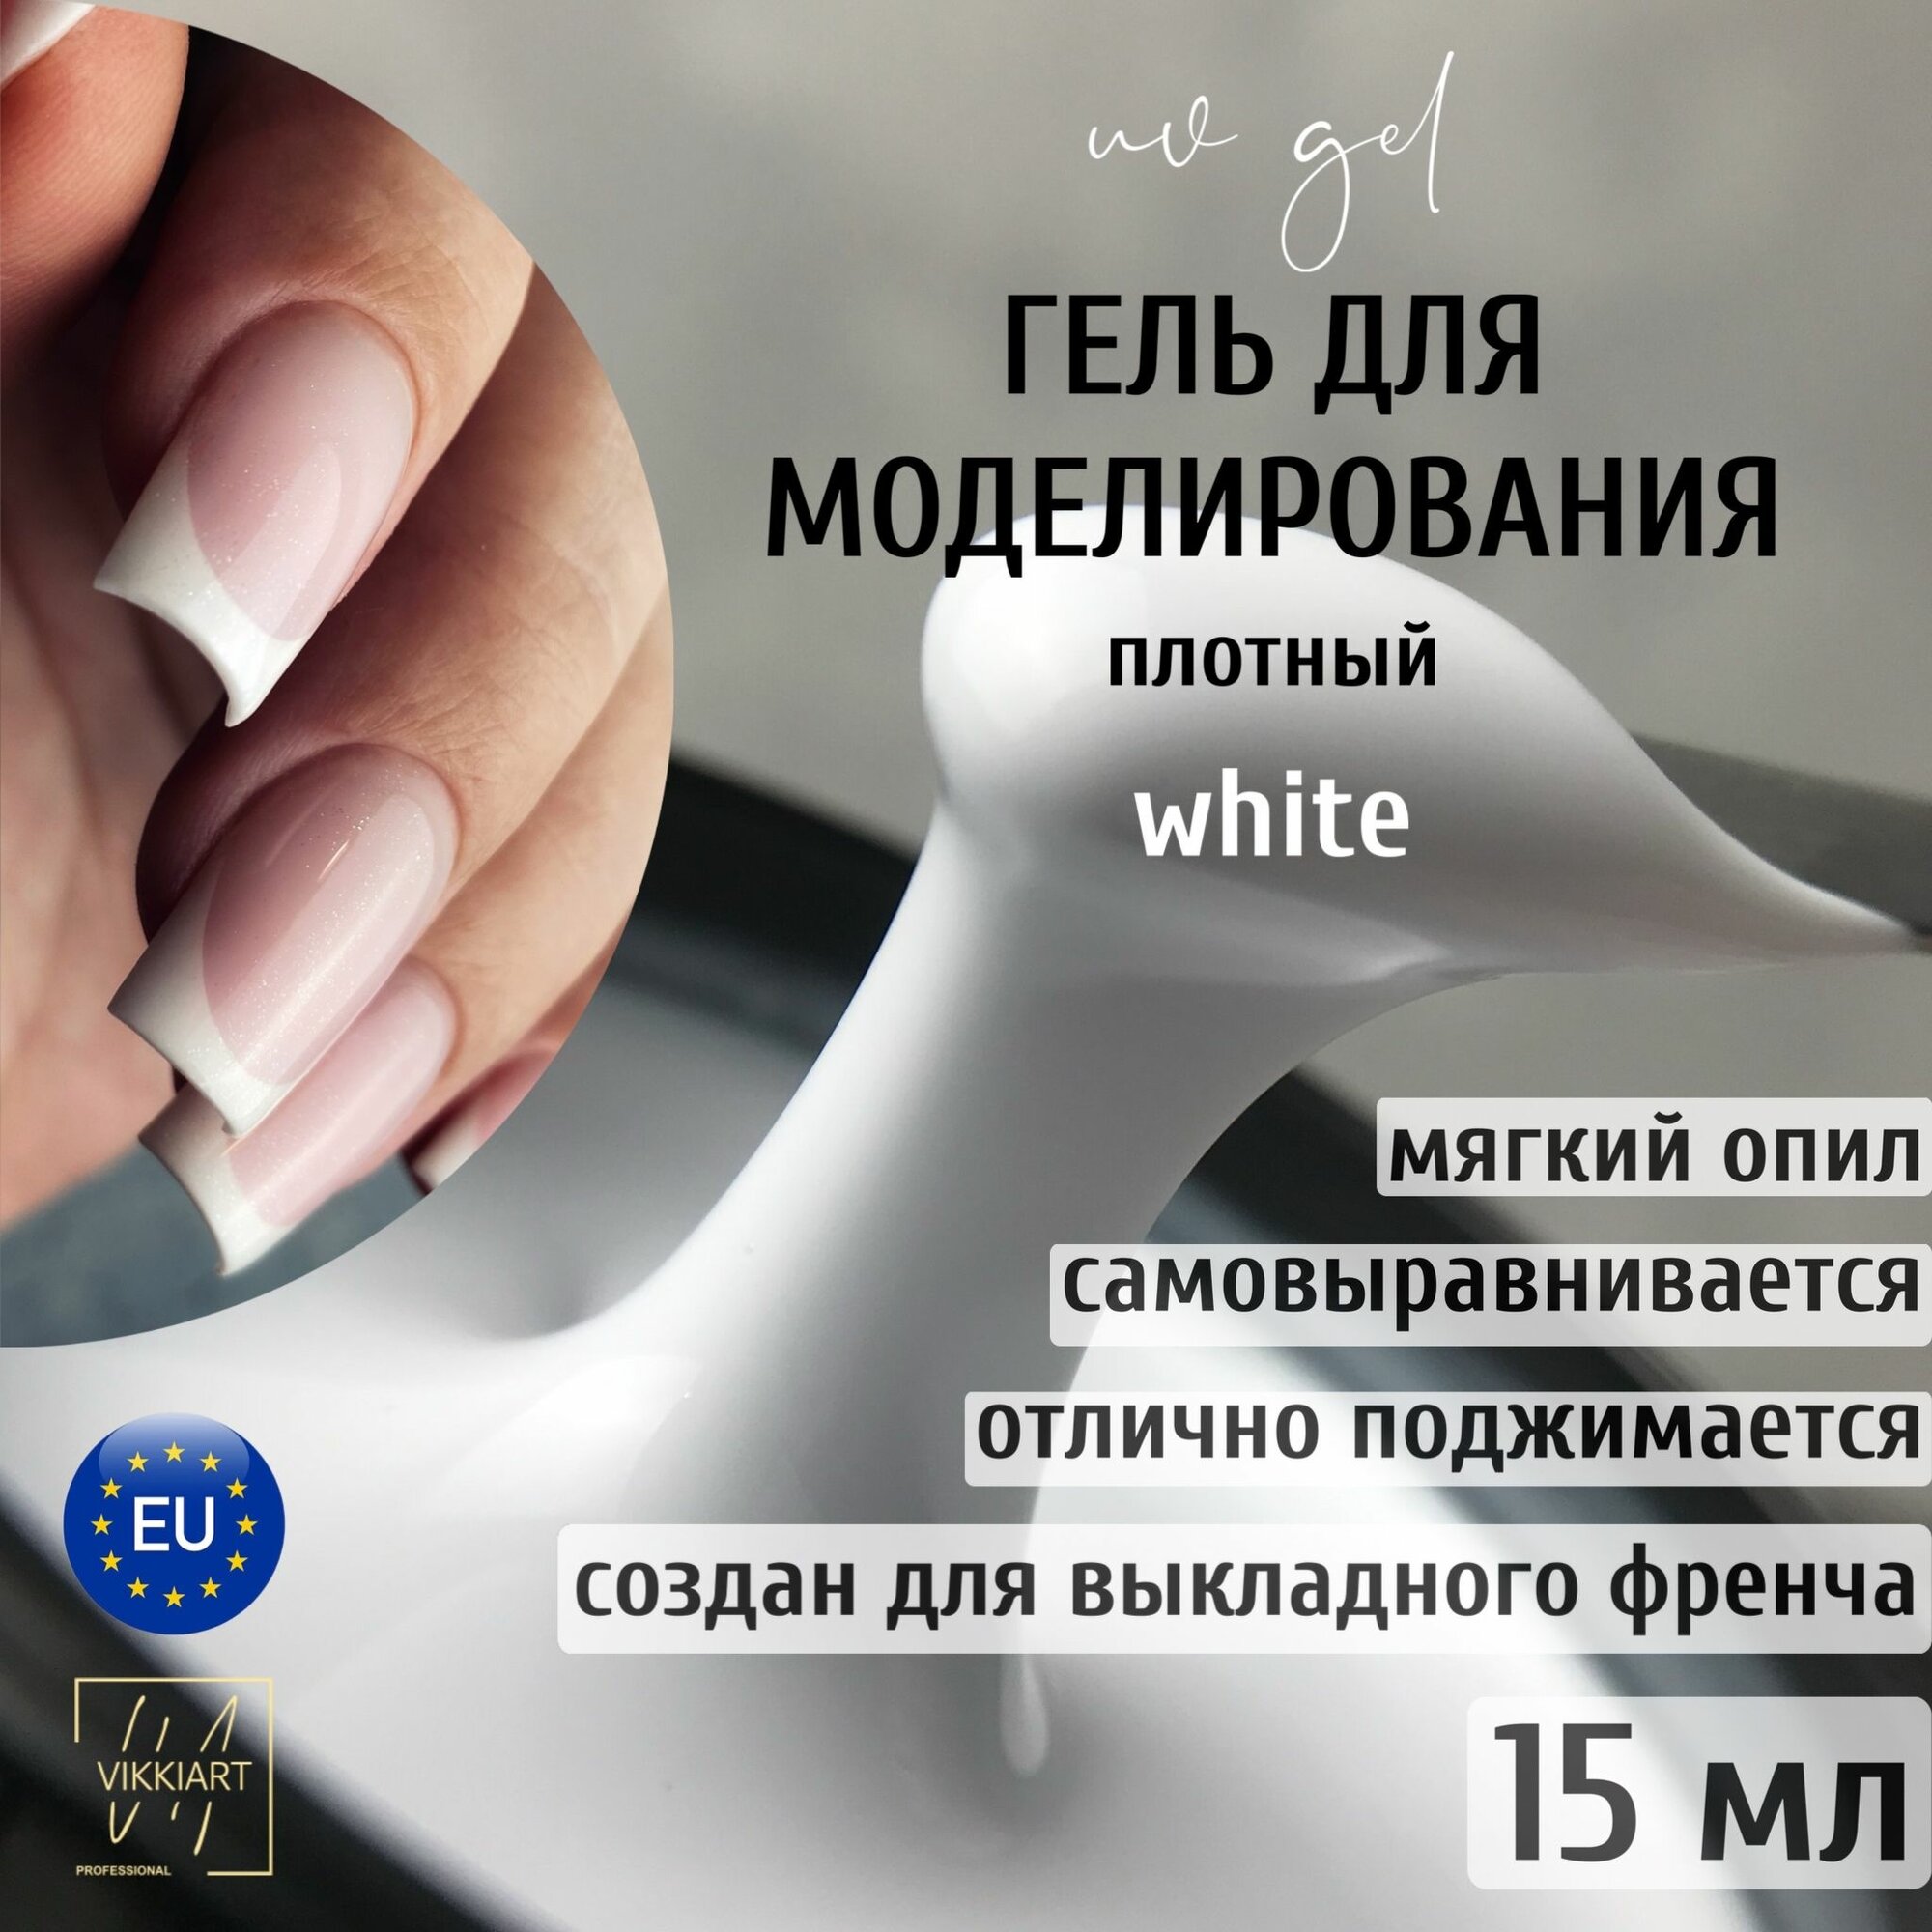 VikkiArt Gel White,15 ml / Гель для наращивания ногтей белый, для моделирования, укрепления и ремонта, гель для выкладного френча